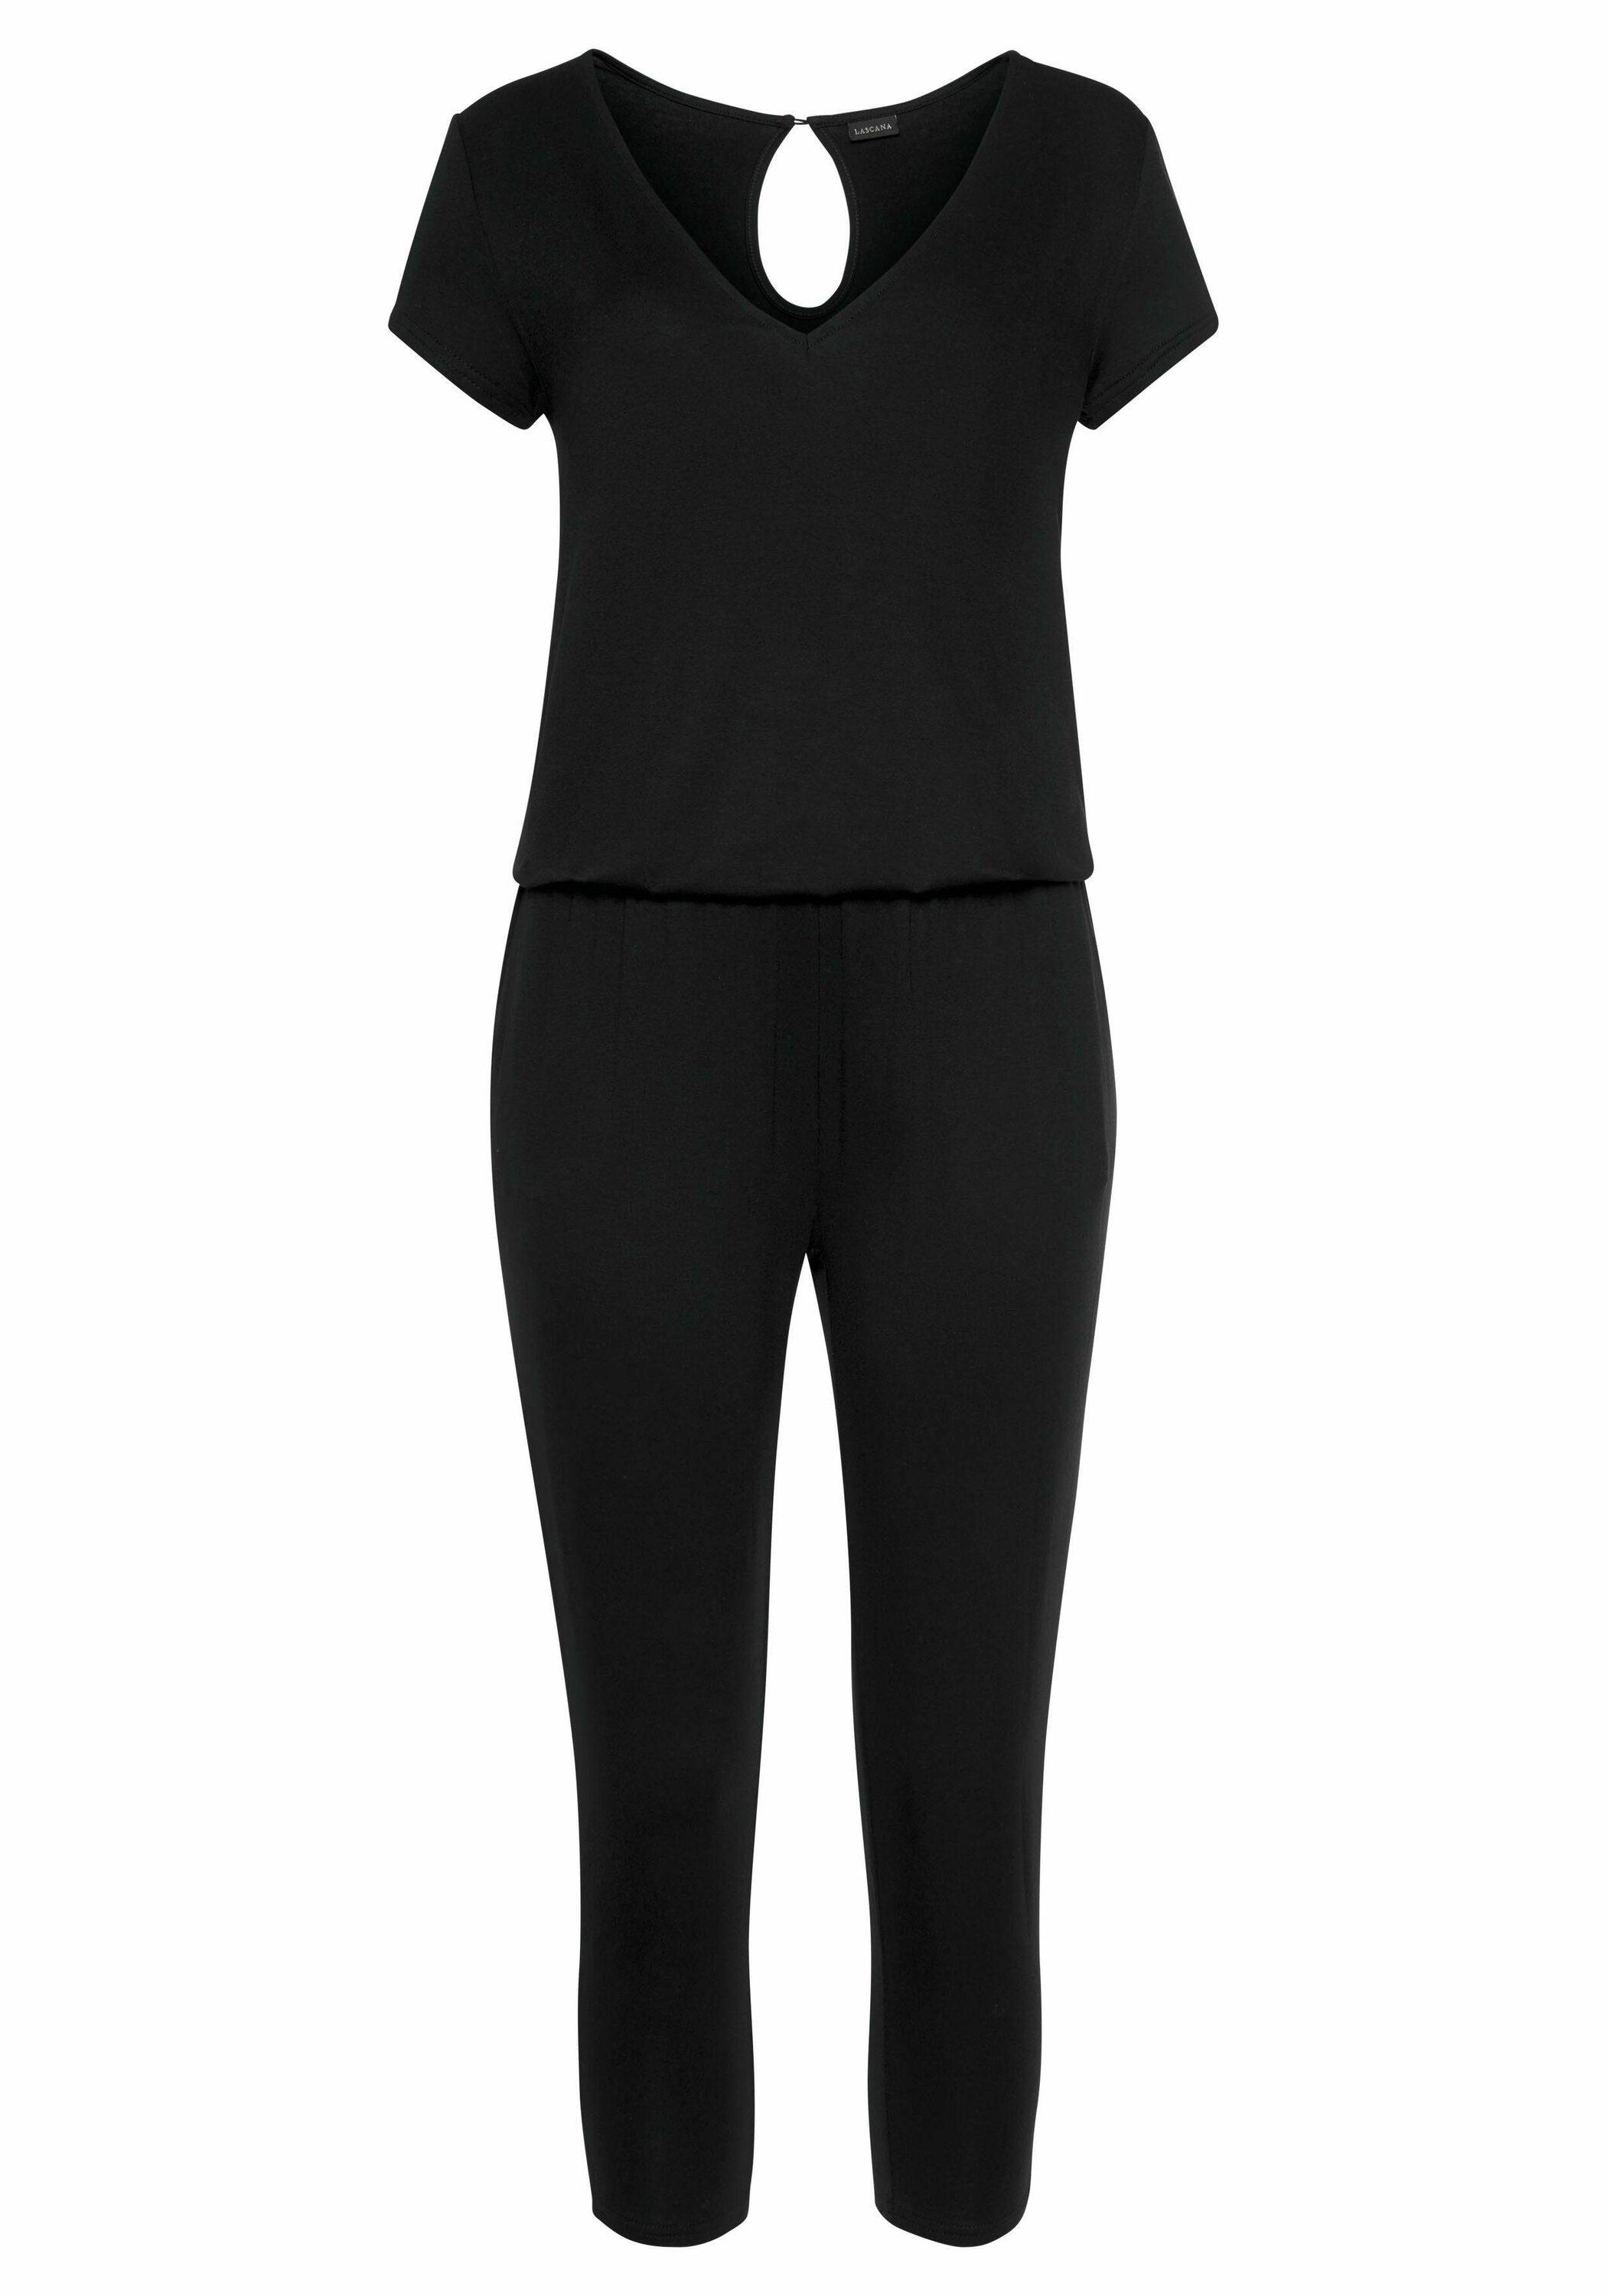 Lascana Overall Damen schwarz im Online Shop von SportScheck kaufen